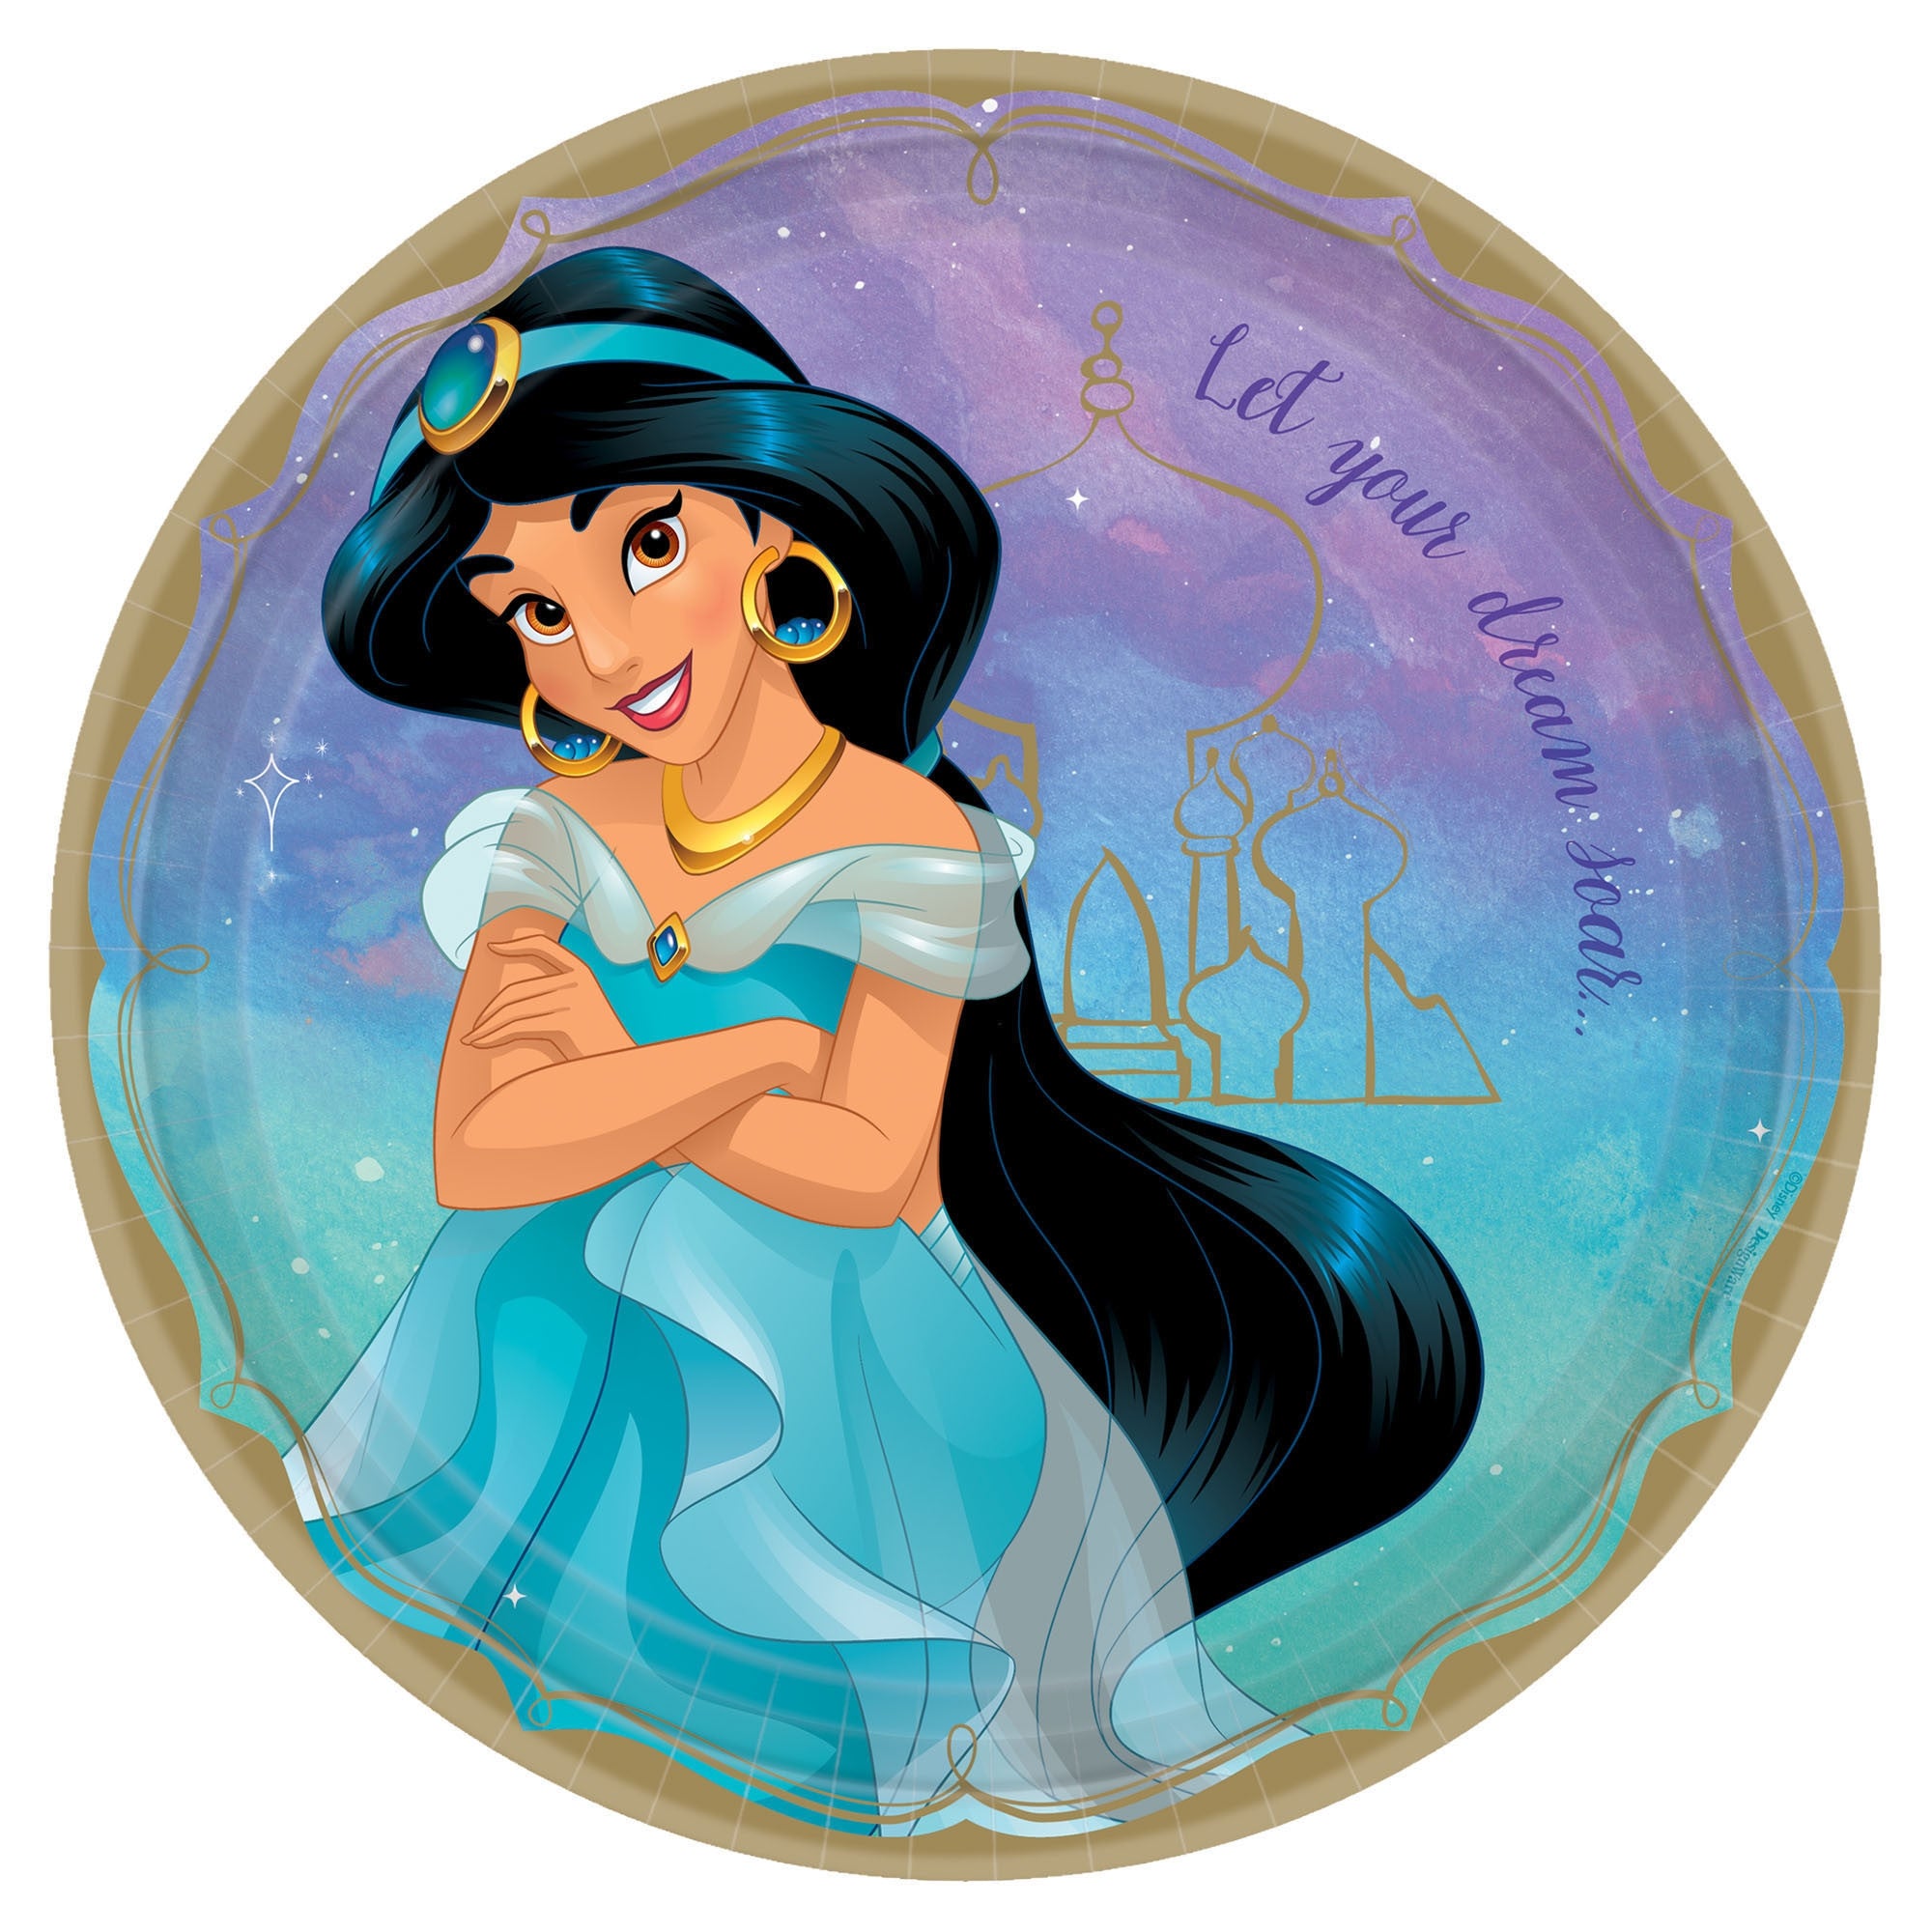 ©Disney Princess Round Plates, 9" - Jasmine